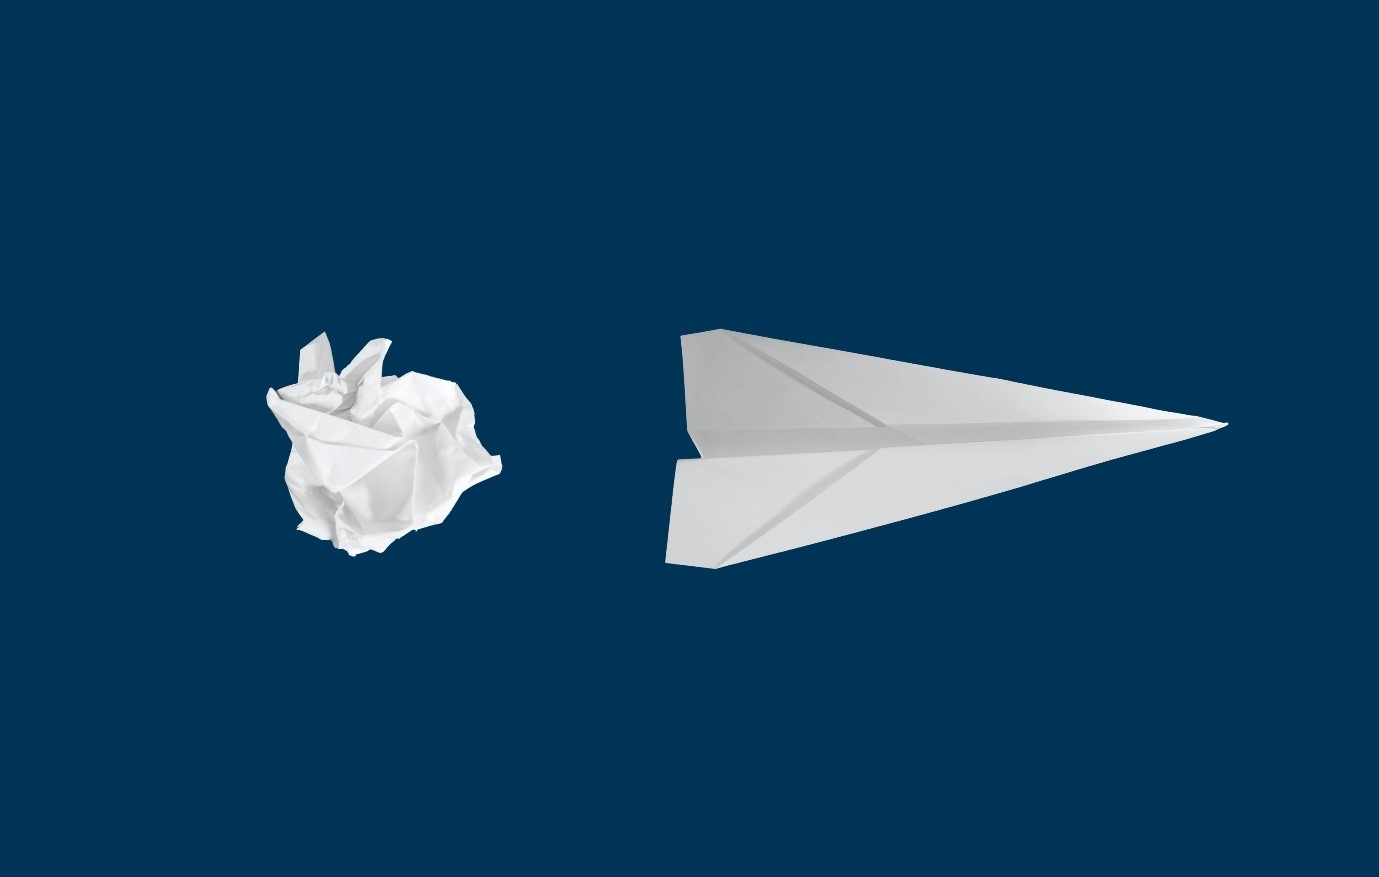 imagem com duas folhas de papel, uma amassada, passando a ideia de um projeto descartado e um em formato de avião de papel, como se o projeto fosse deslanchar